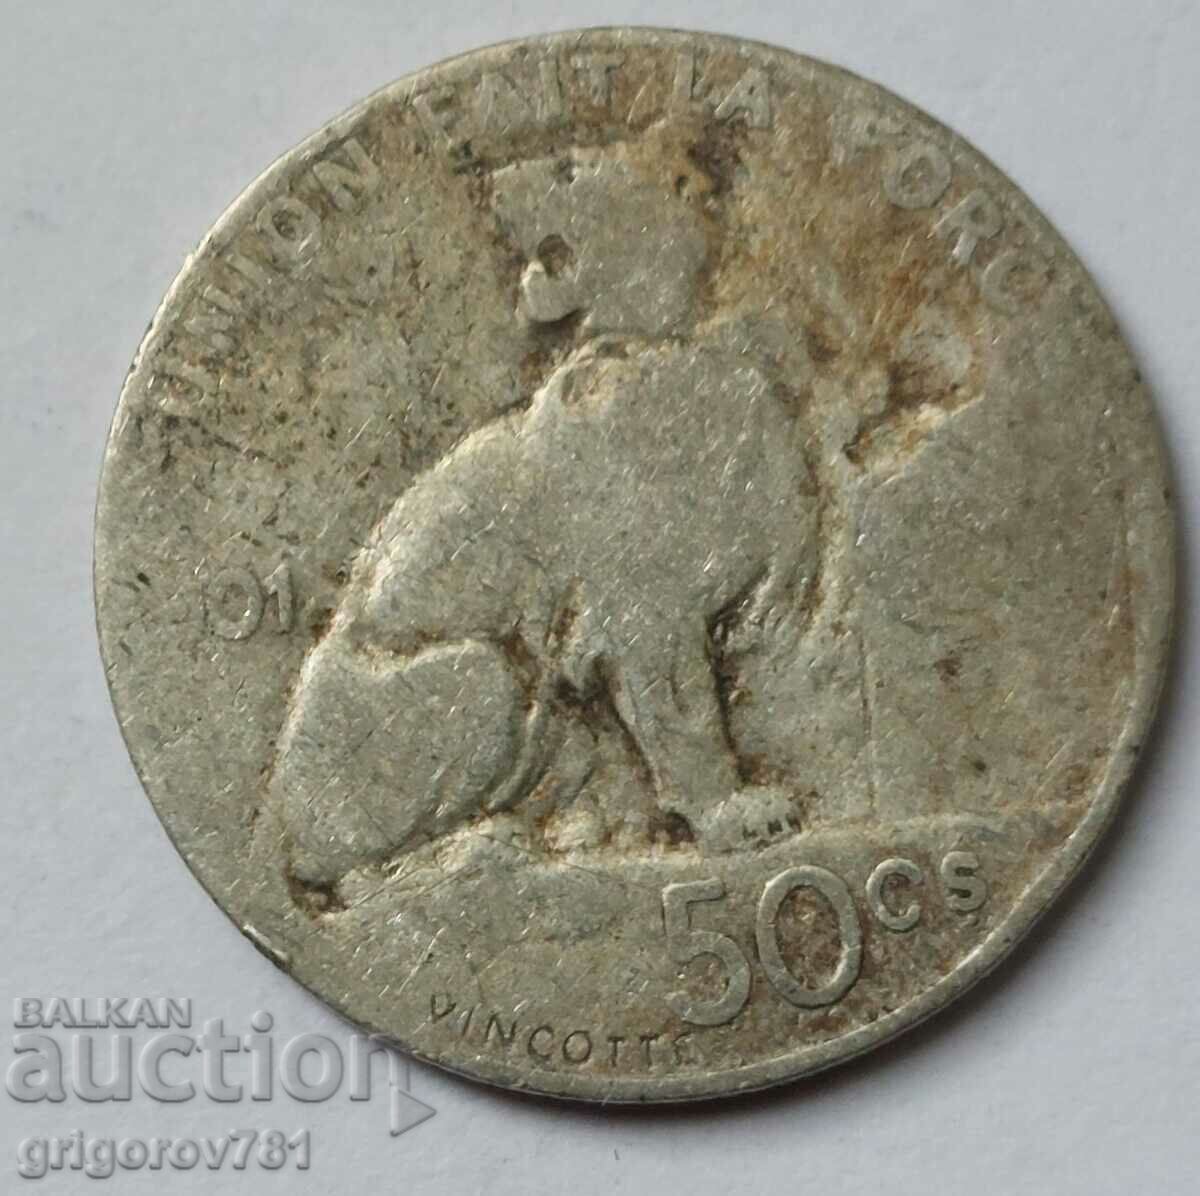 Ασημένιο 50 cm Βέλγιο 1901 - ασημένιο νόμισμα #77